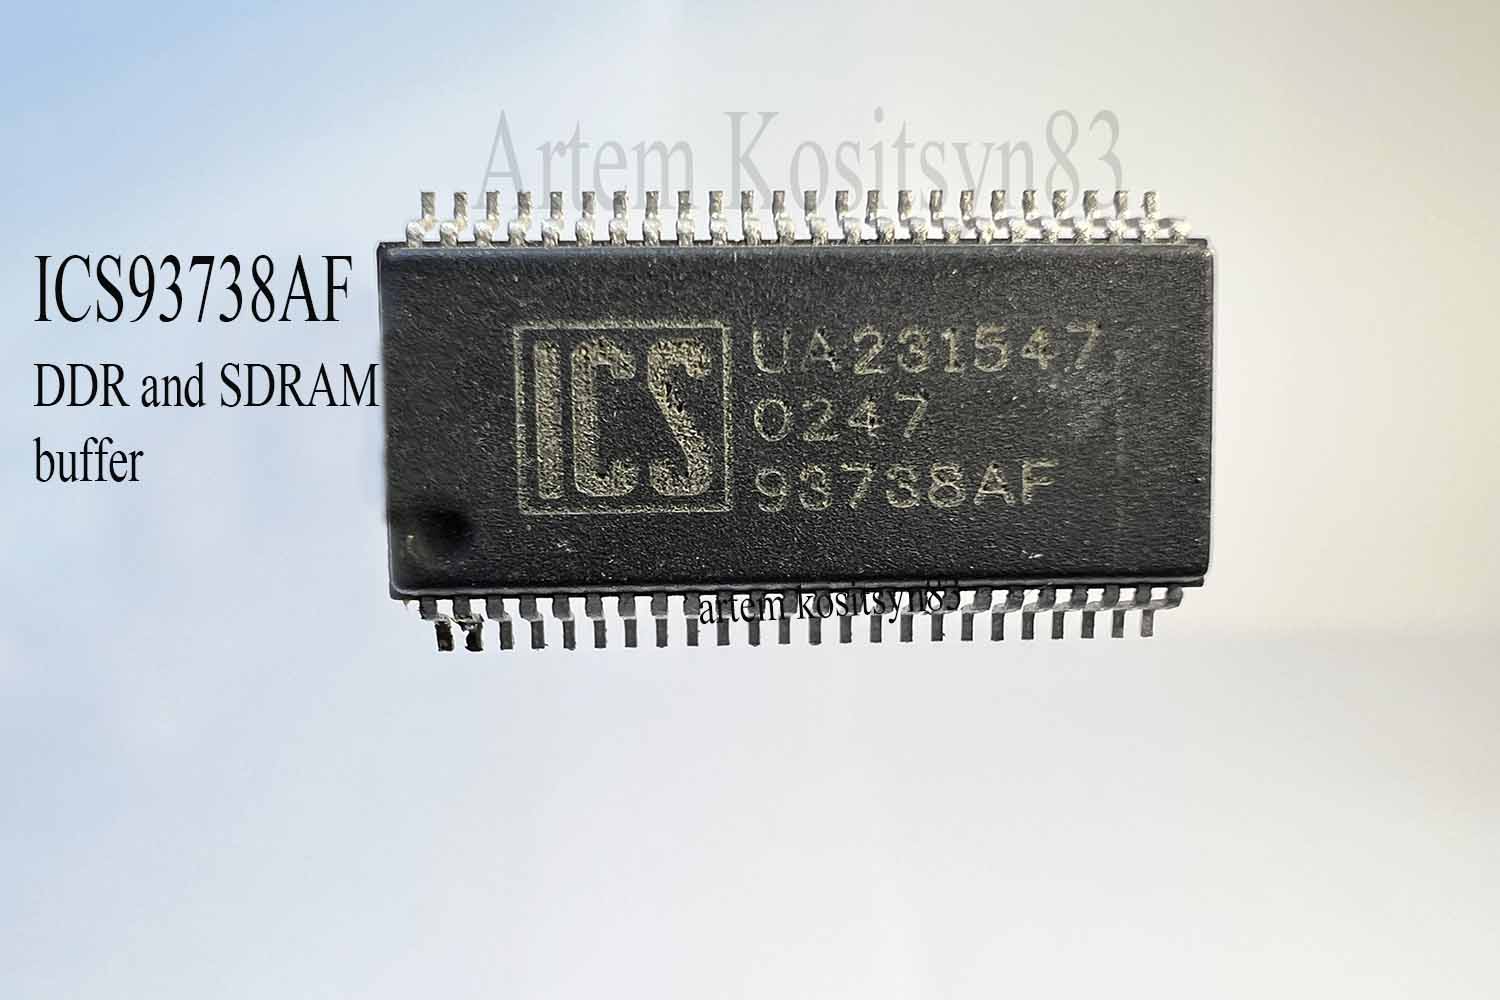 Подробнее о статье ICS93738AF.DDR and SDRAM buffer.Datasheet